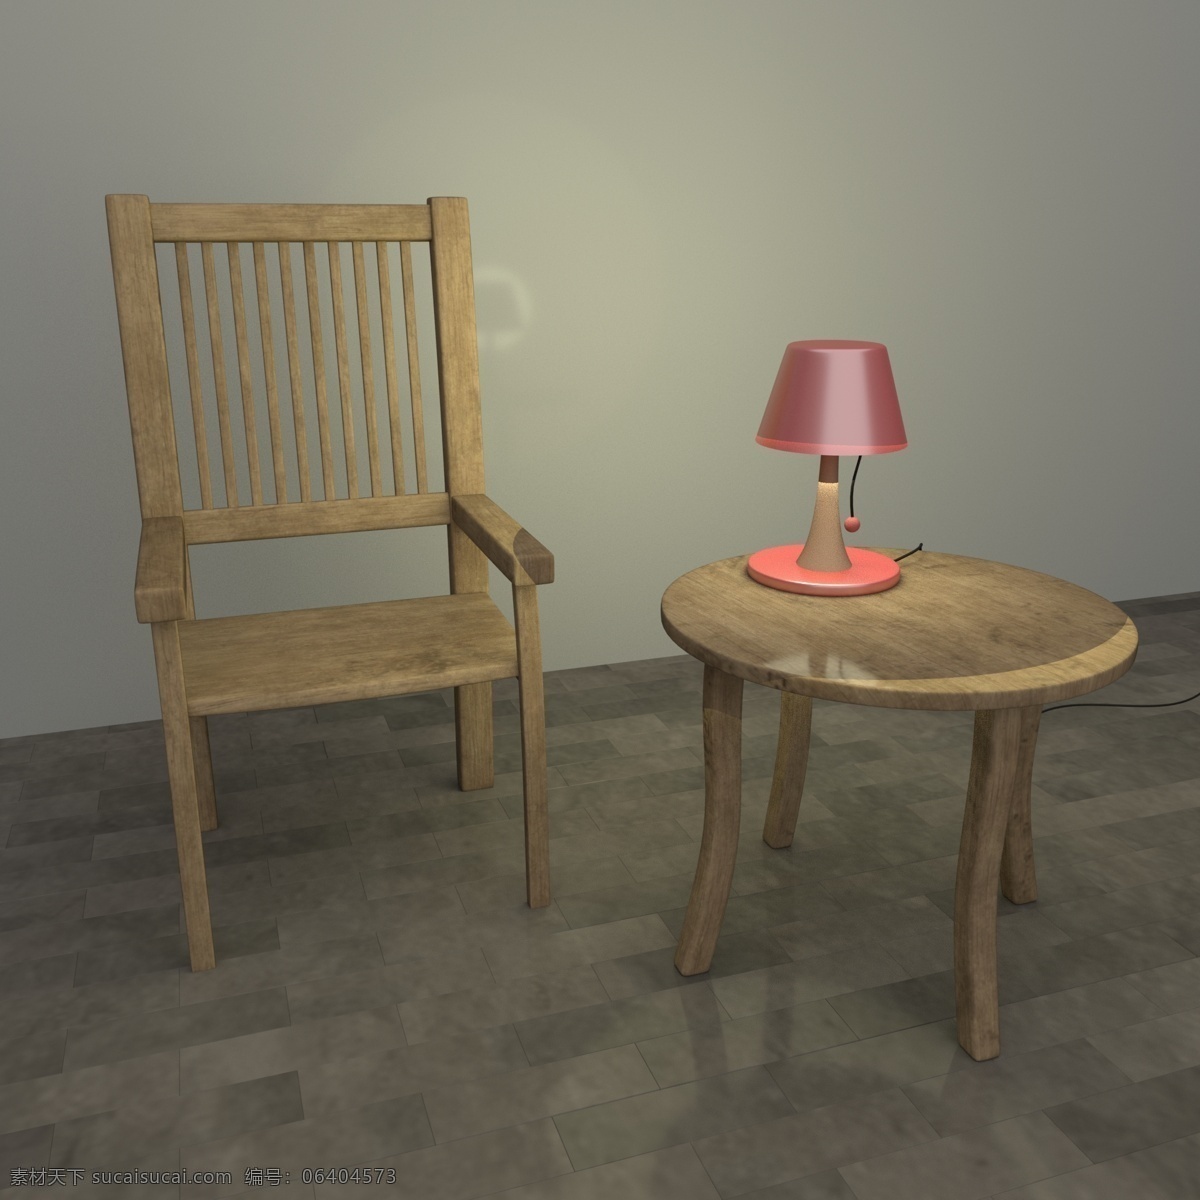 装饰装修 家具 椅子 桌子 台灯 3d模型 材质 贴图 渲染 灯光 效果图